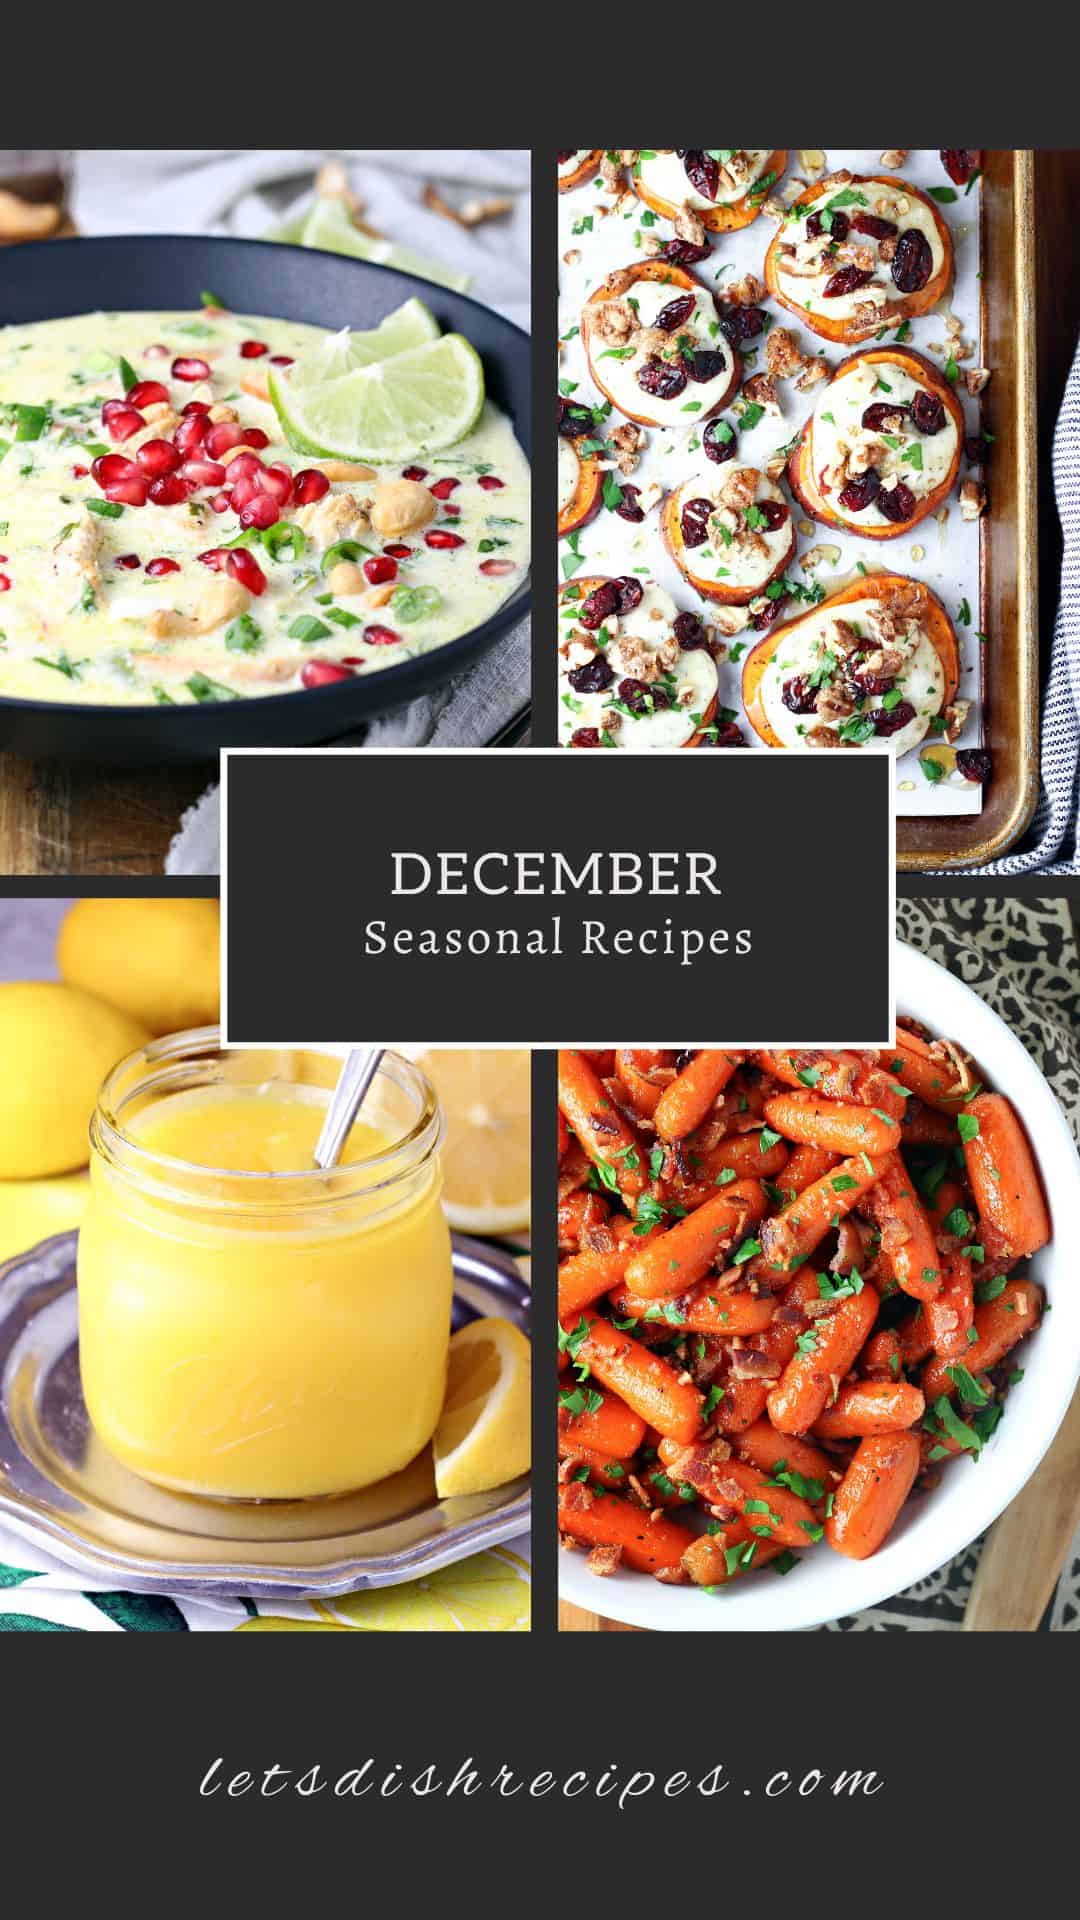 In Season Recipes: December